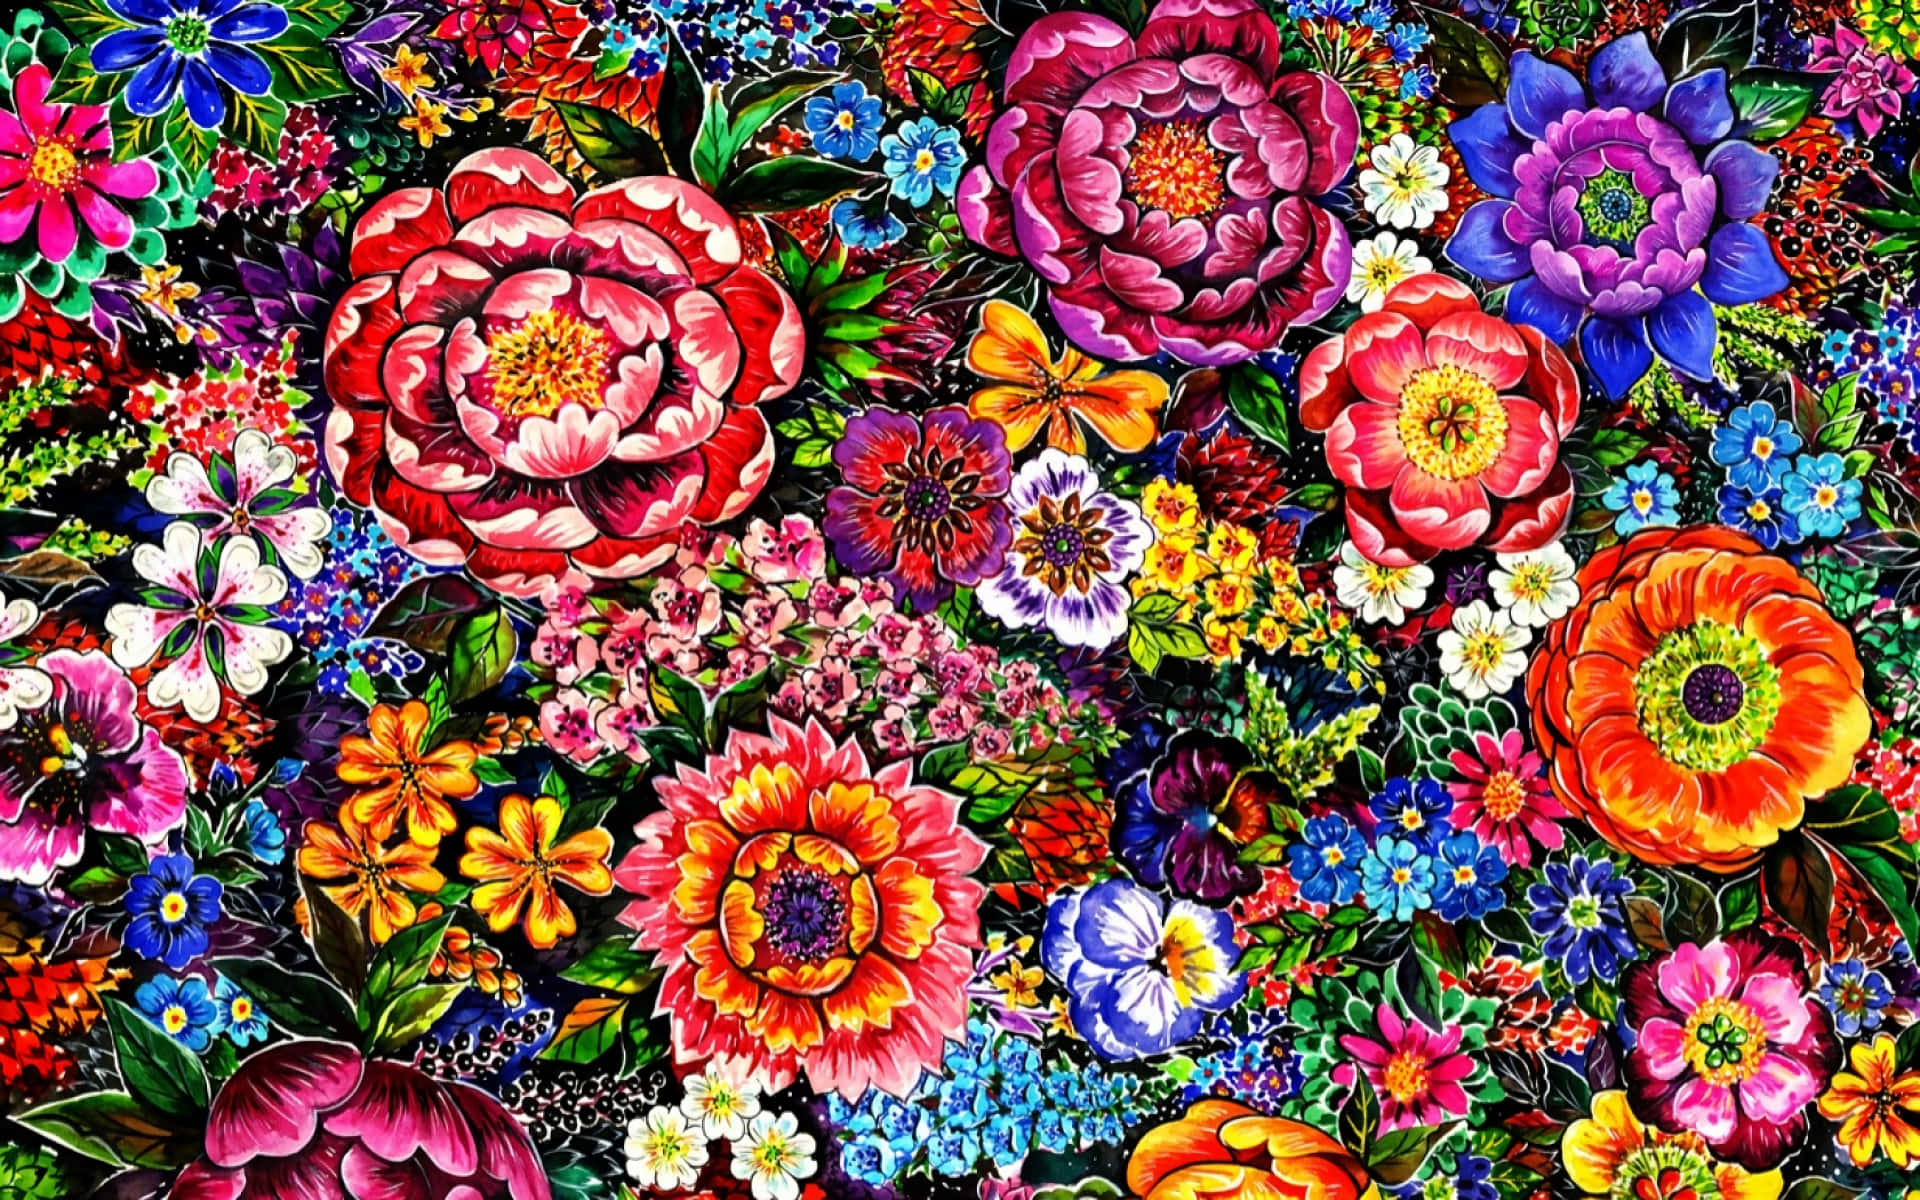 Imagende Pintura De Flores En La Naturaleza